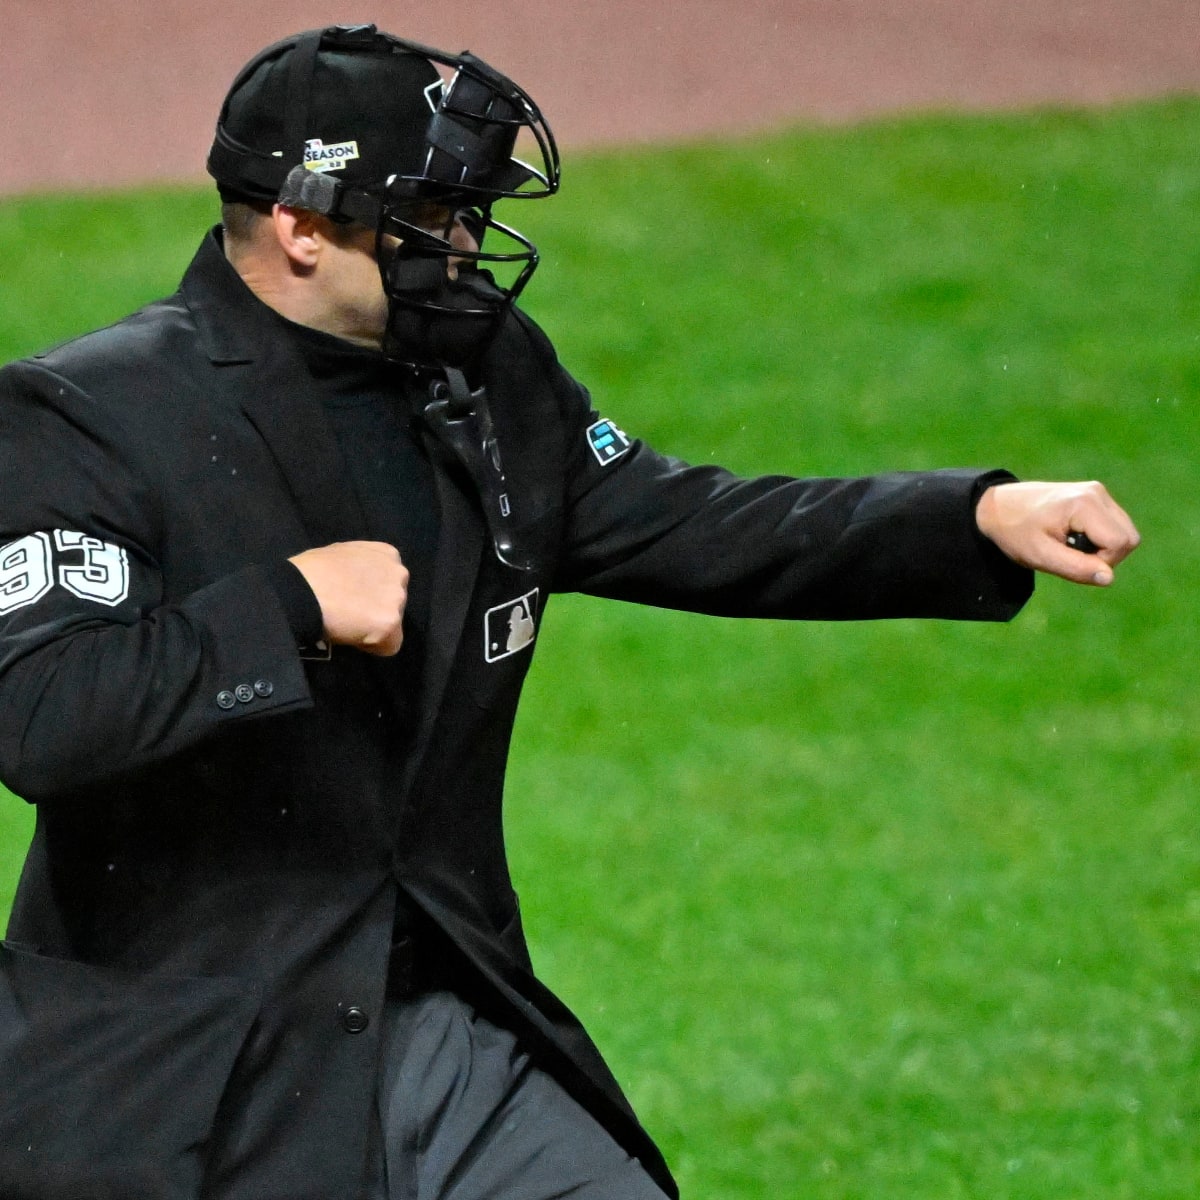 Cập nhật với hơn 69 về MLB umpire jacket hay nhất  cdgdbentreeduvn